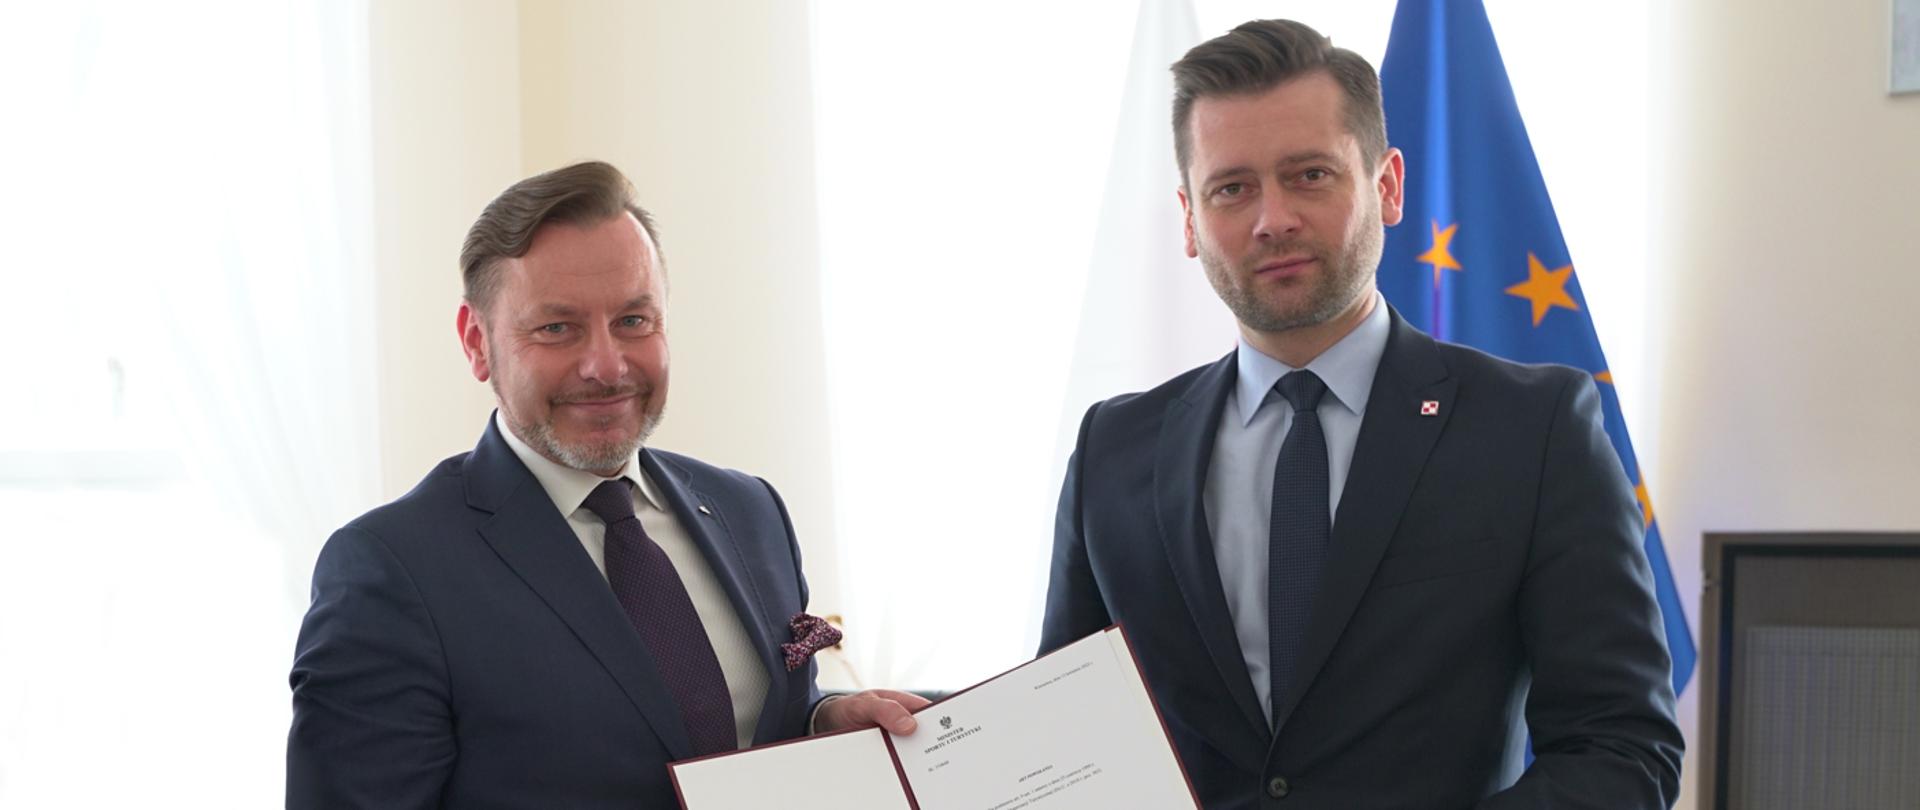 Minister Kamil Bortniczuk powołał Rafała Szmytke na prezesa Polskiej Organizacji Turystycznej - wręczenie nominacji